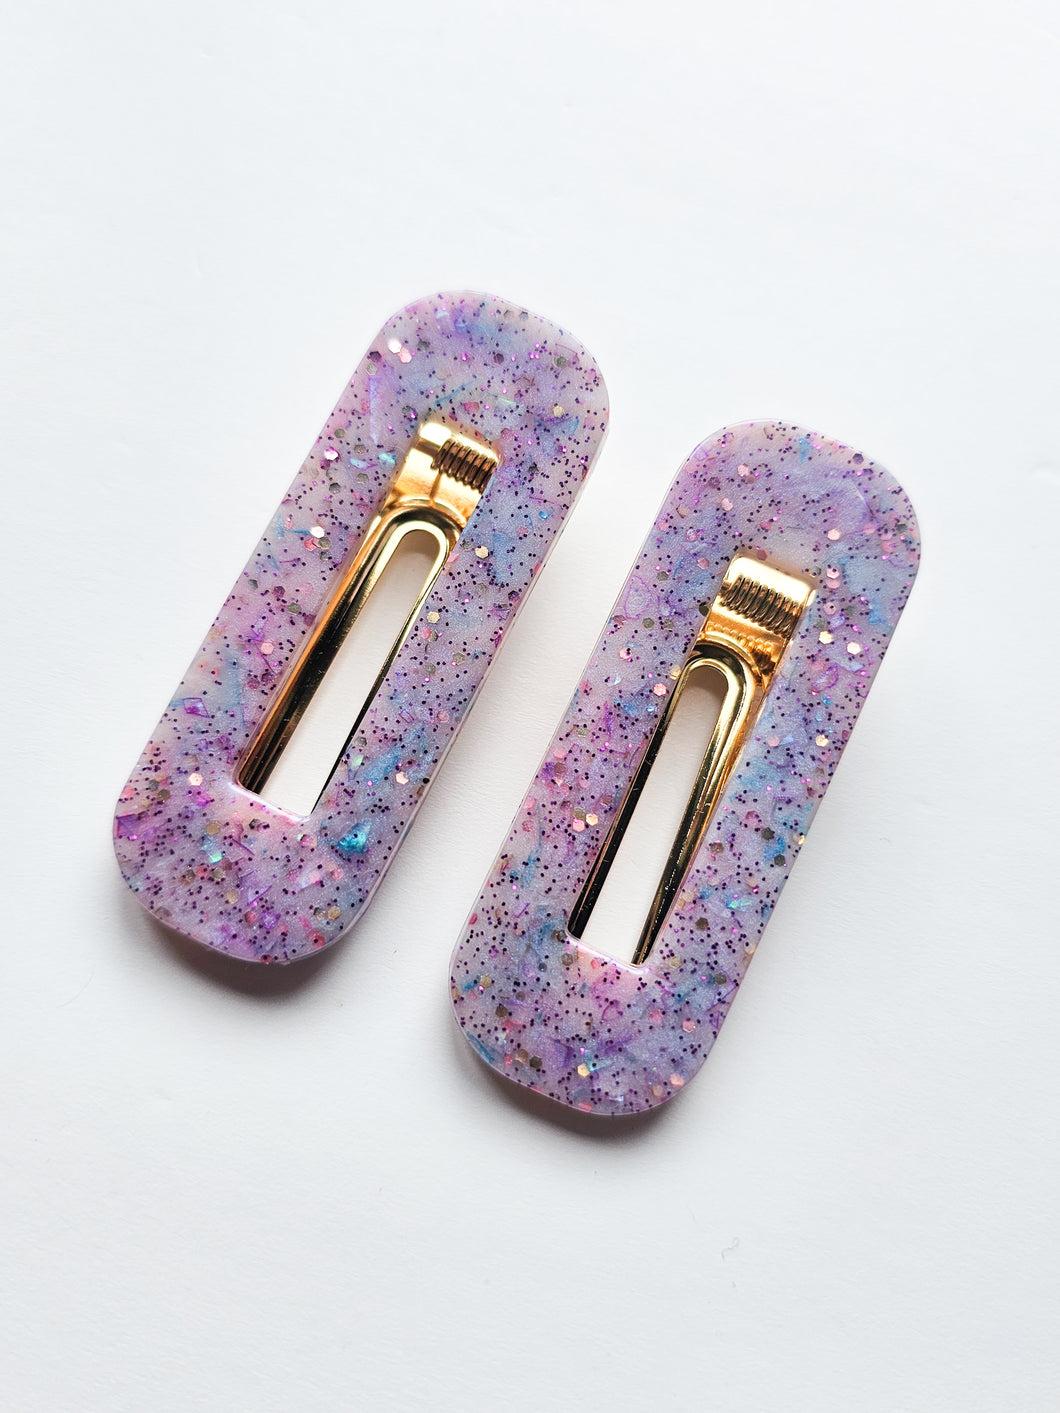 Handmade Purple Glitter Resin Hair Clips